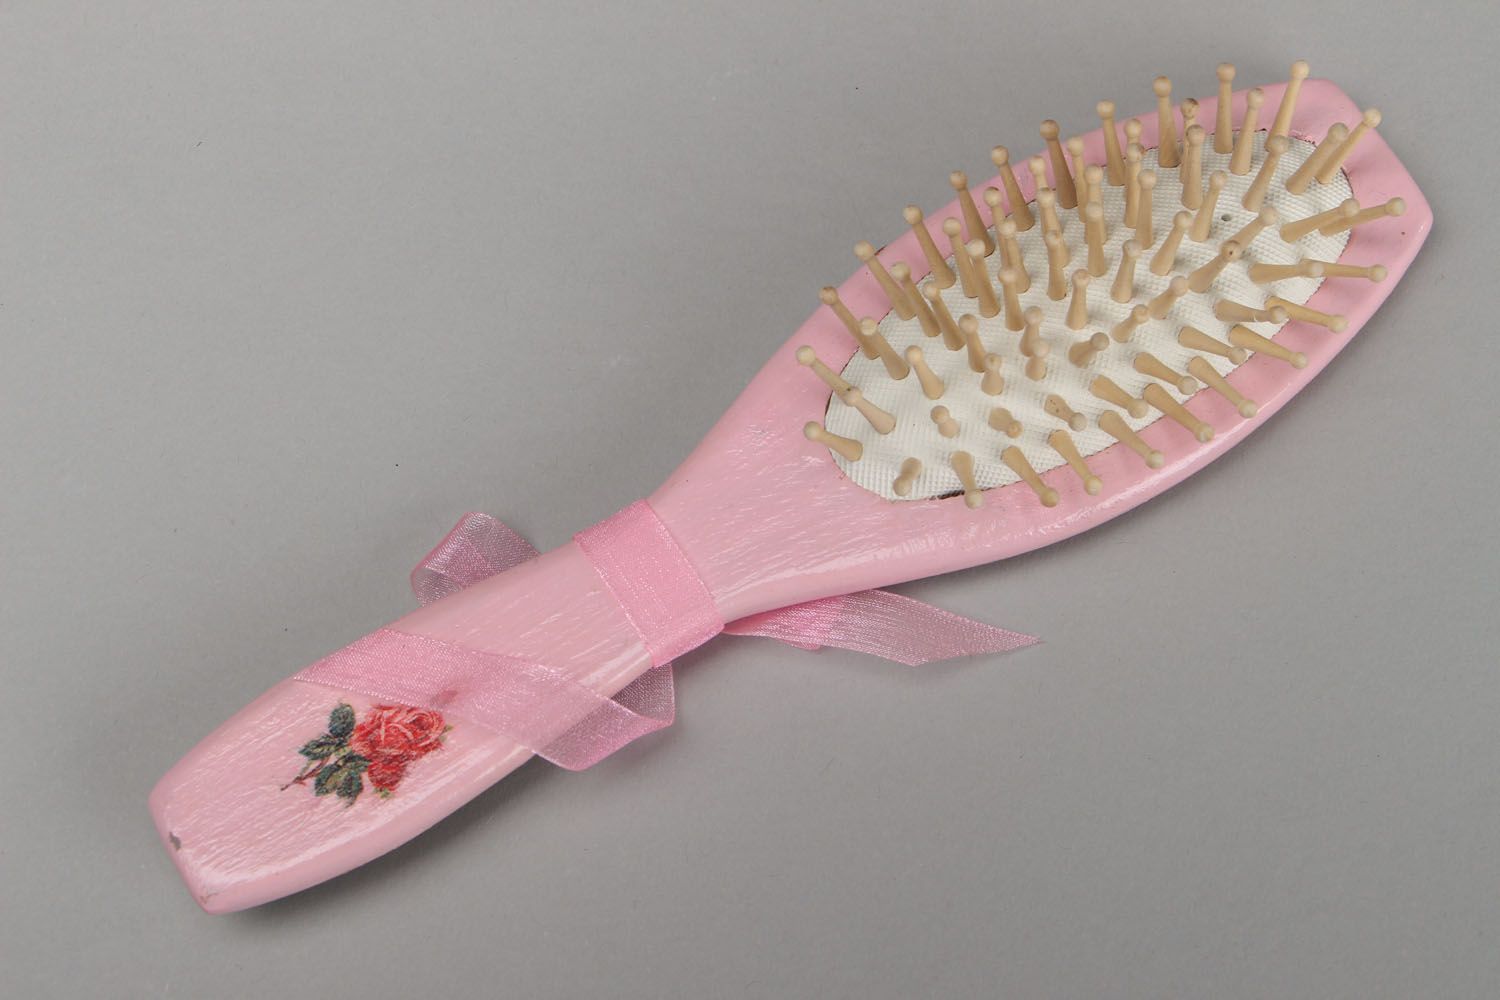 Brosse à cheveux en bois rose technique serviettage photo 1